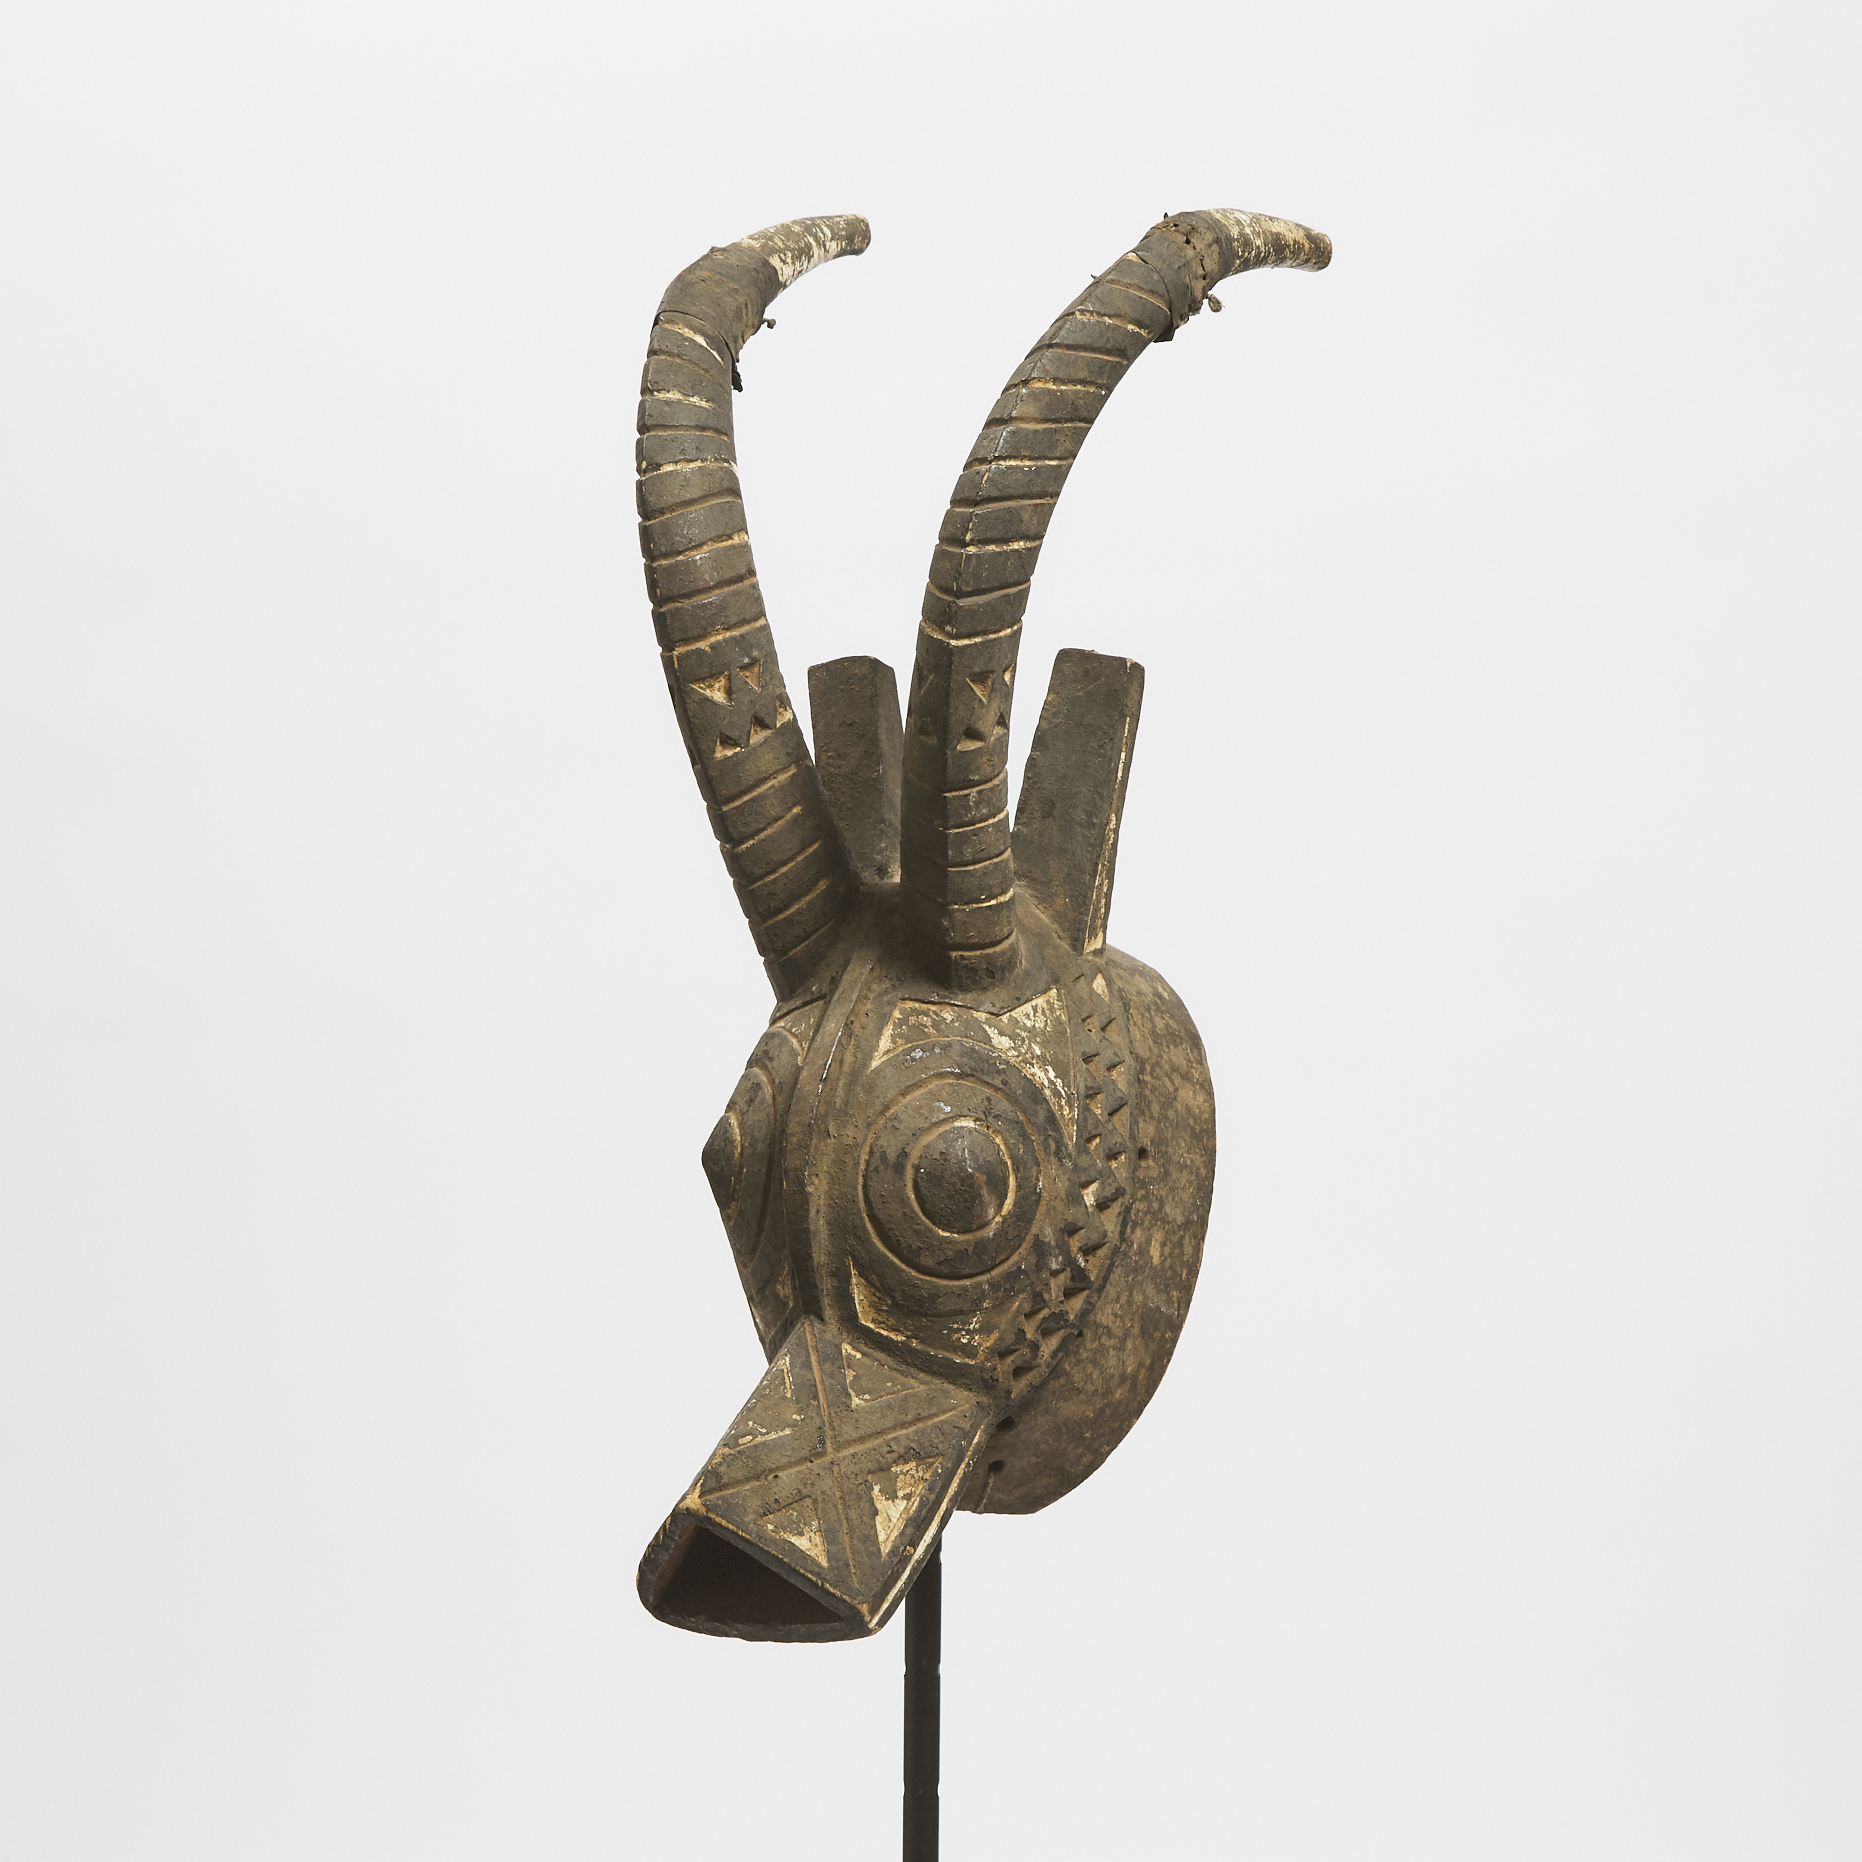 Bobo Bwa Polychrome Antelope Mask, Burkina Faso, West Africa, mid 20th century